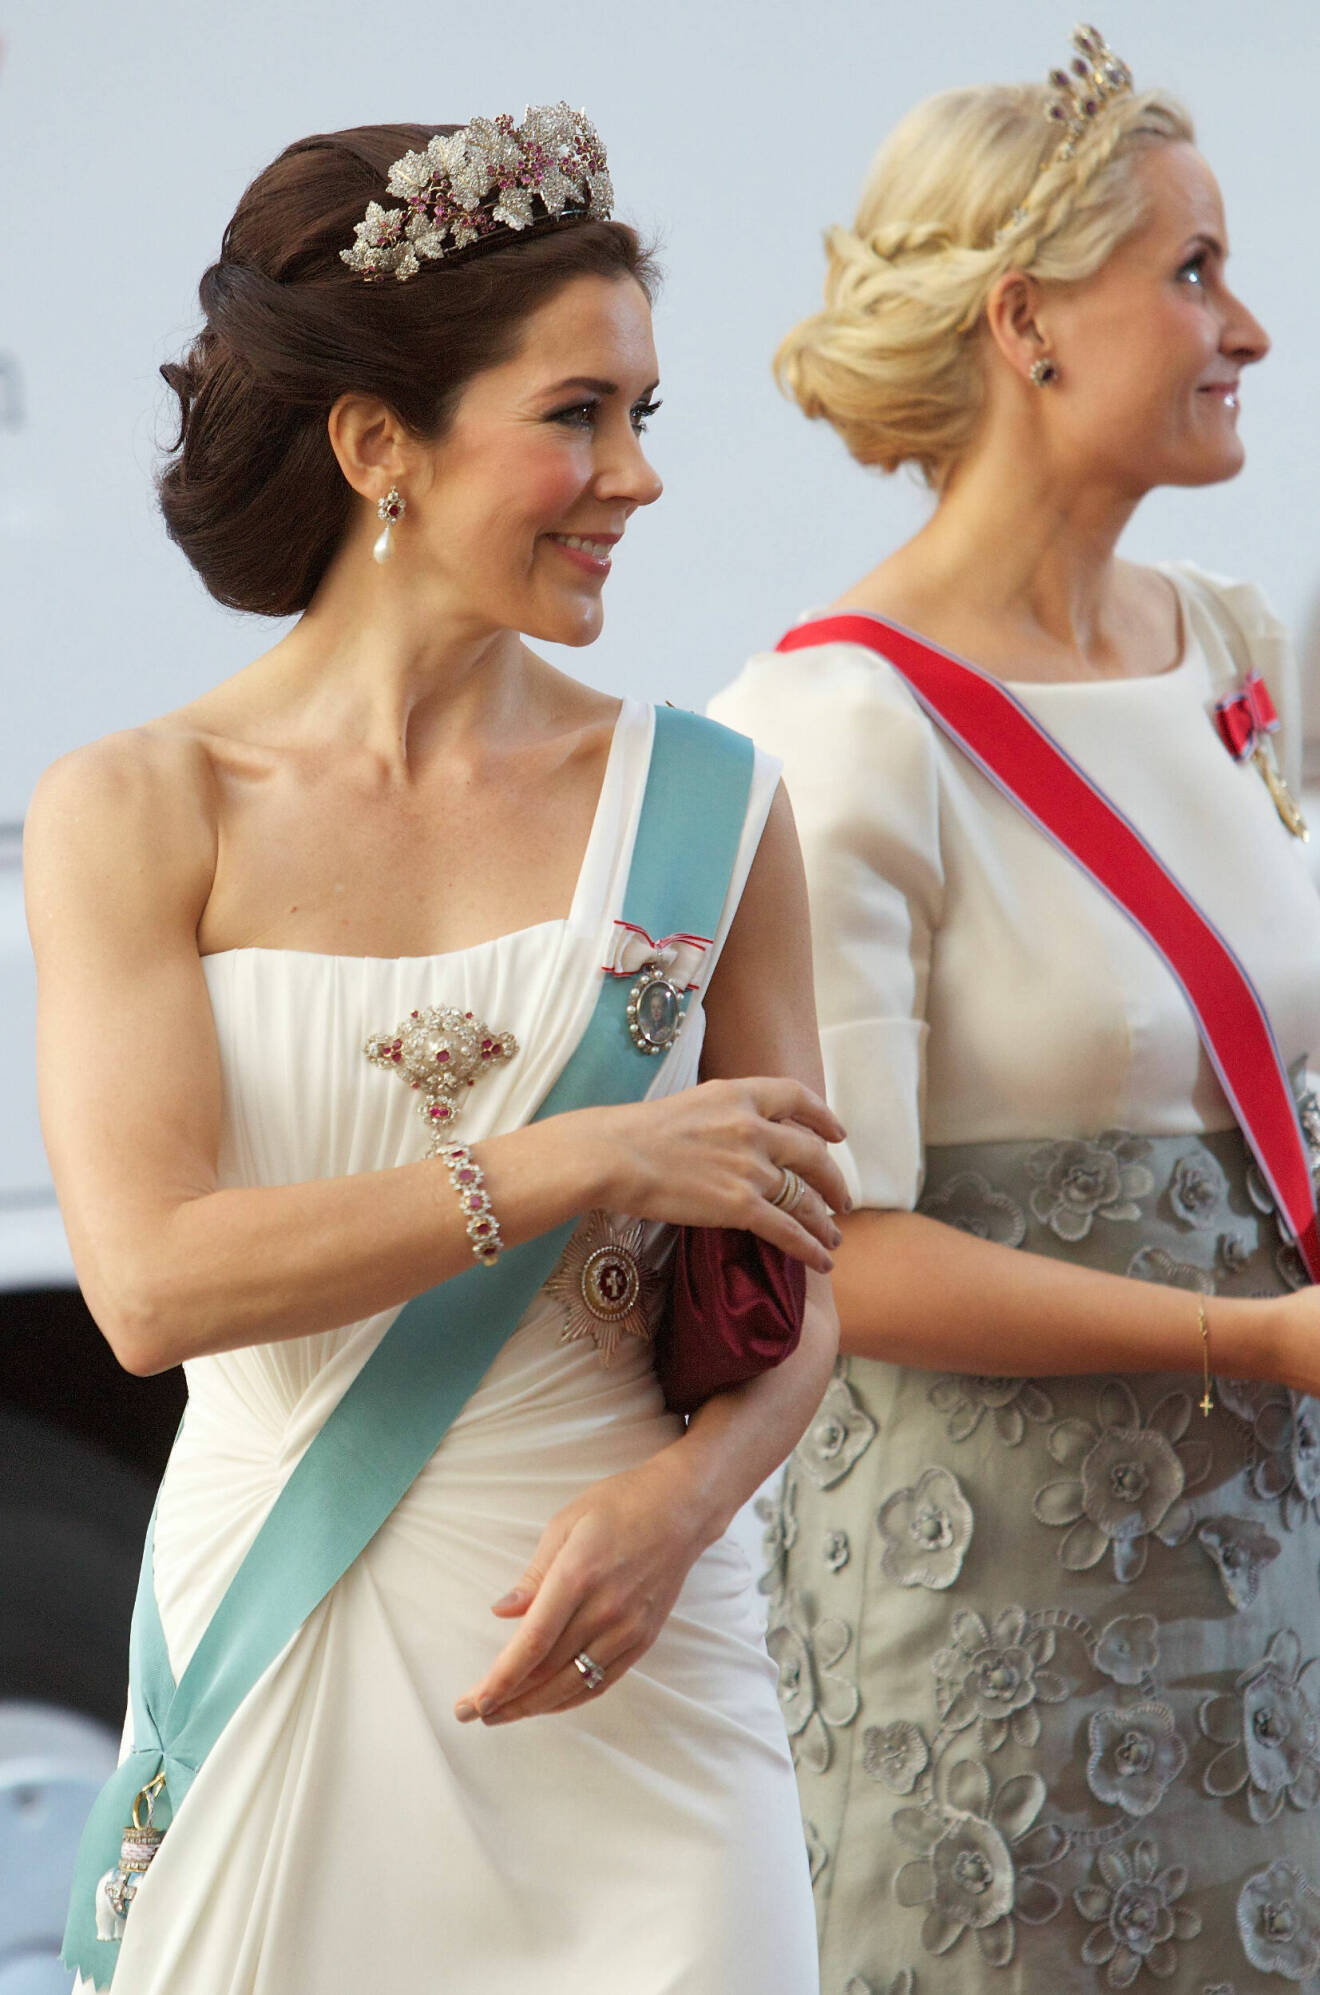 Kronprinsessan Mary av Danmark och kronprinsessan Mette-Marit av Norge 2010.